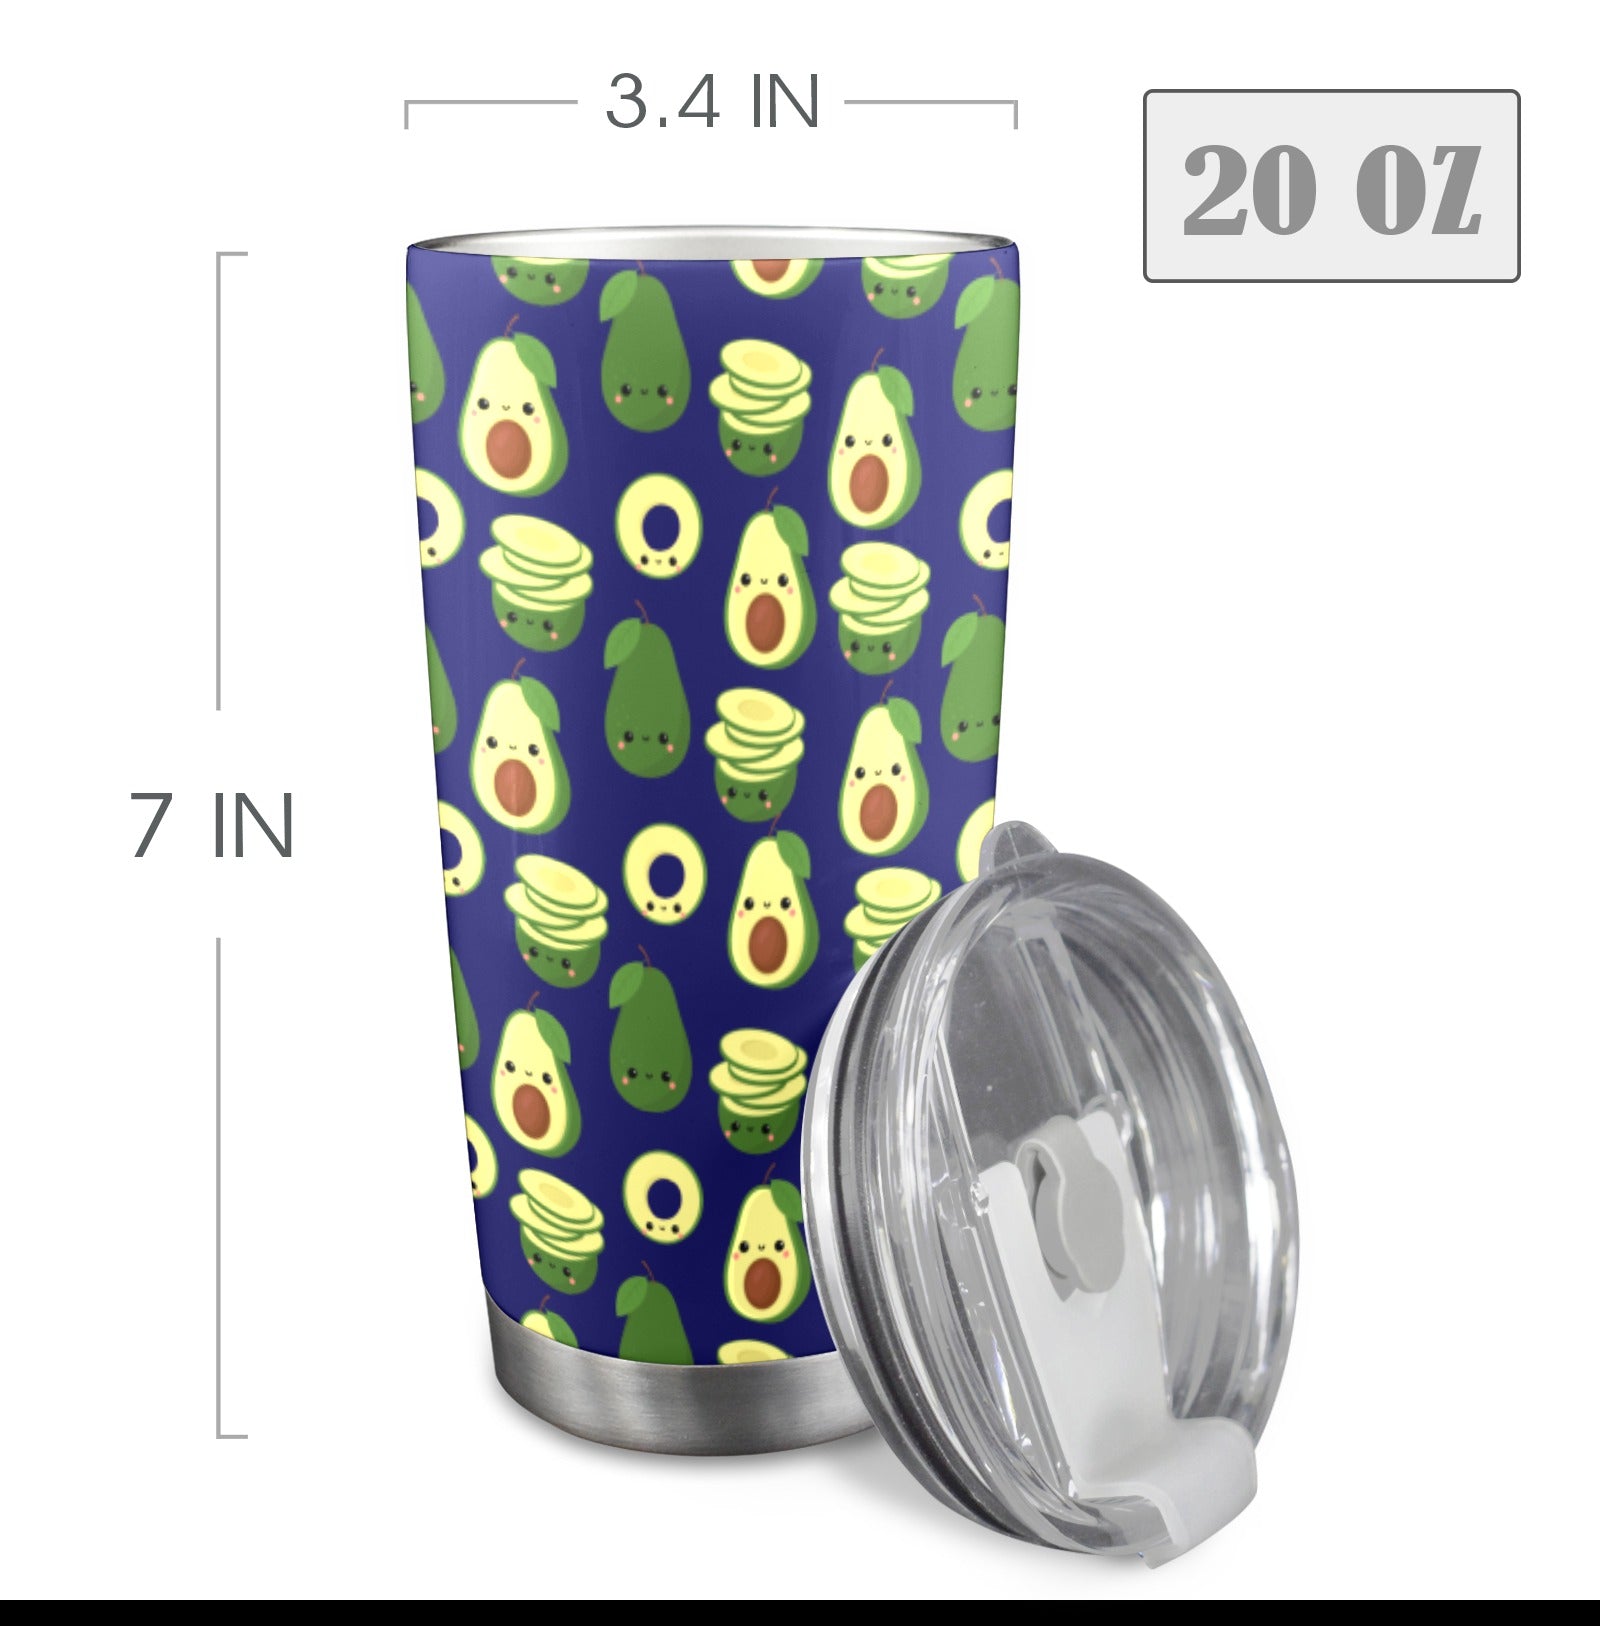 Cute Avocados - 20oz Travel Mug with Clear Lid Clear Lid Travel Mug Food